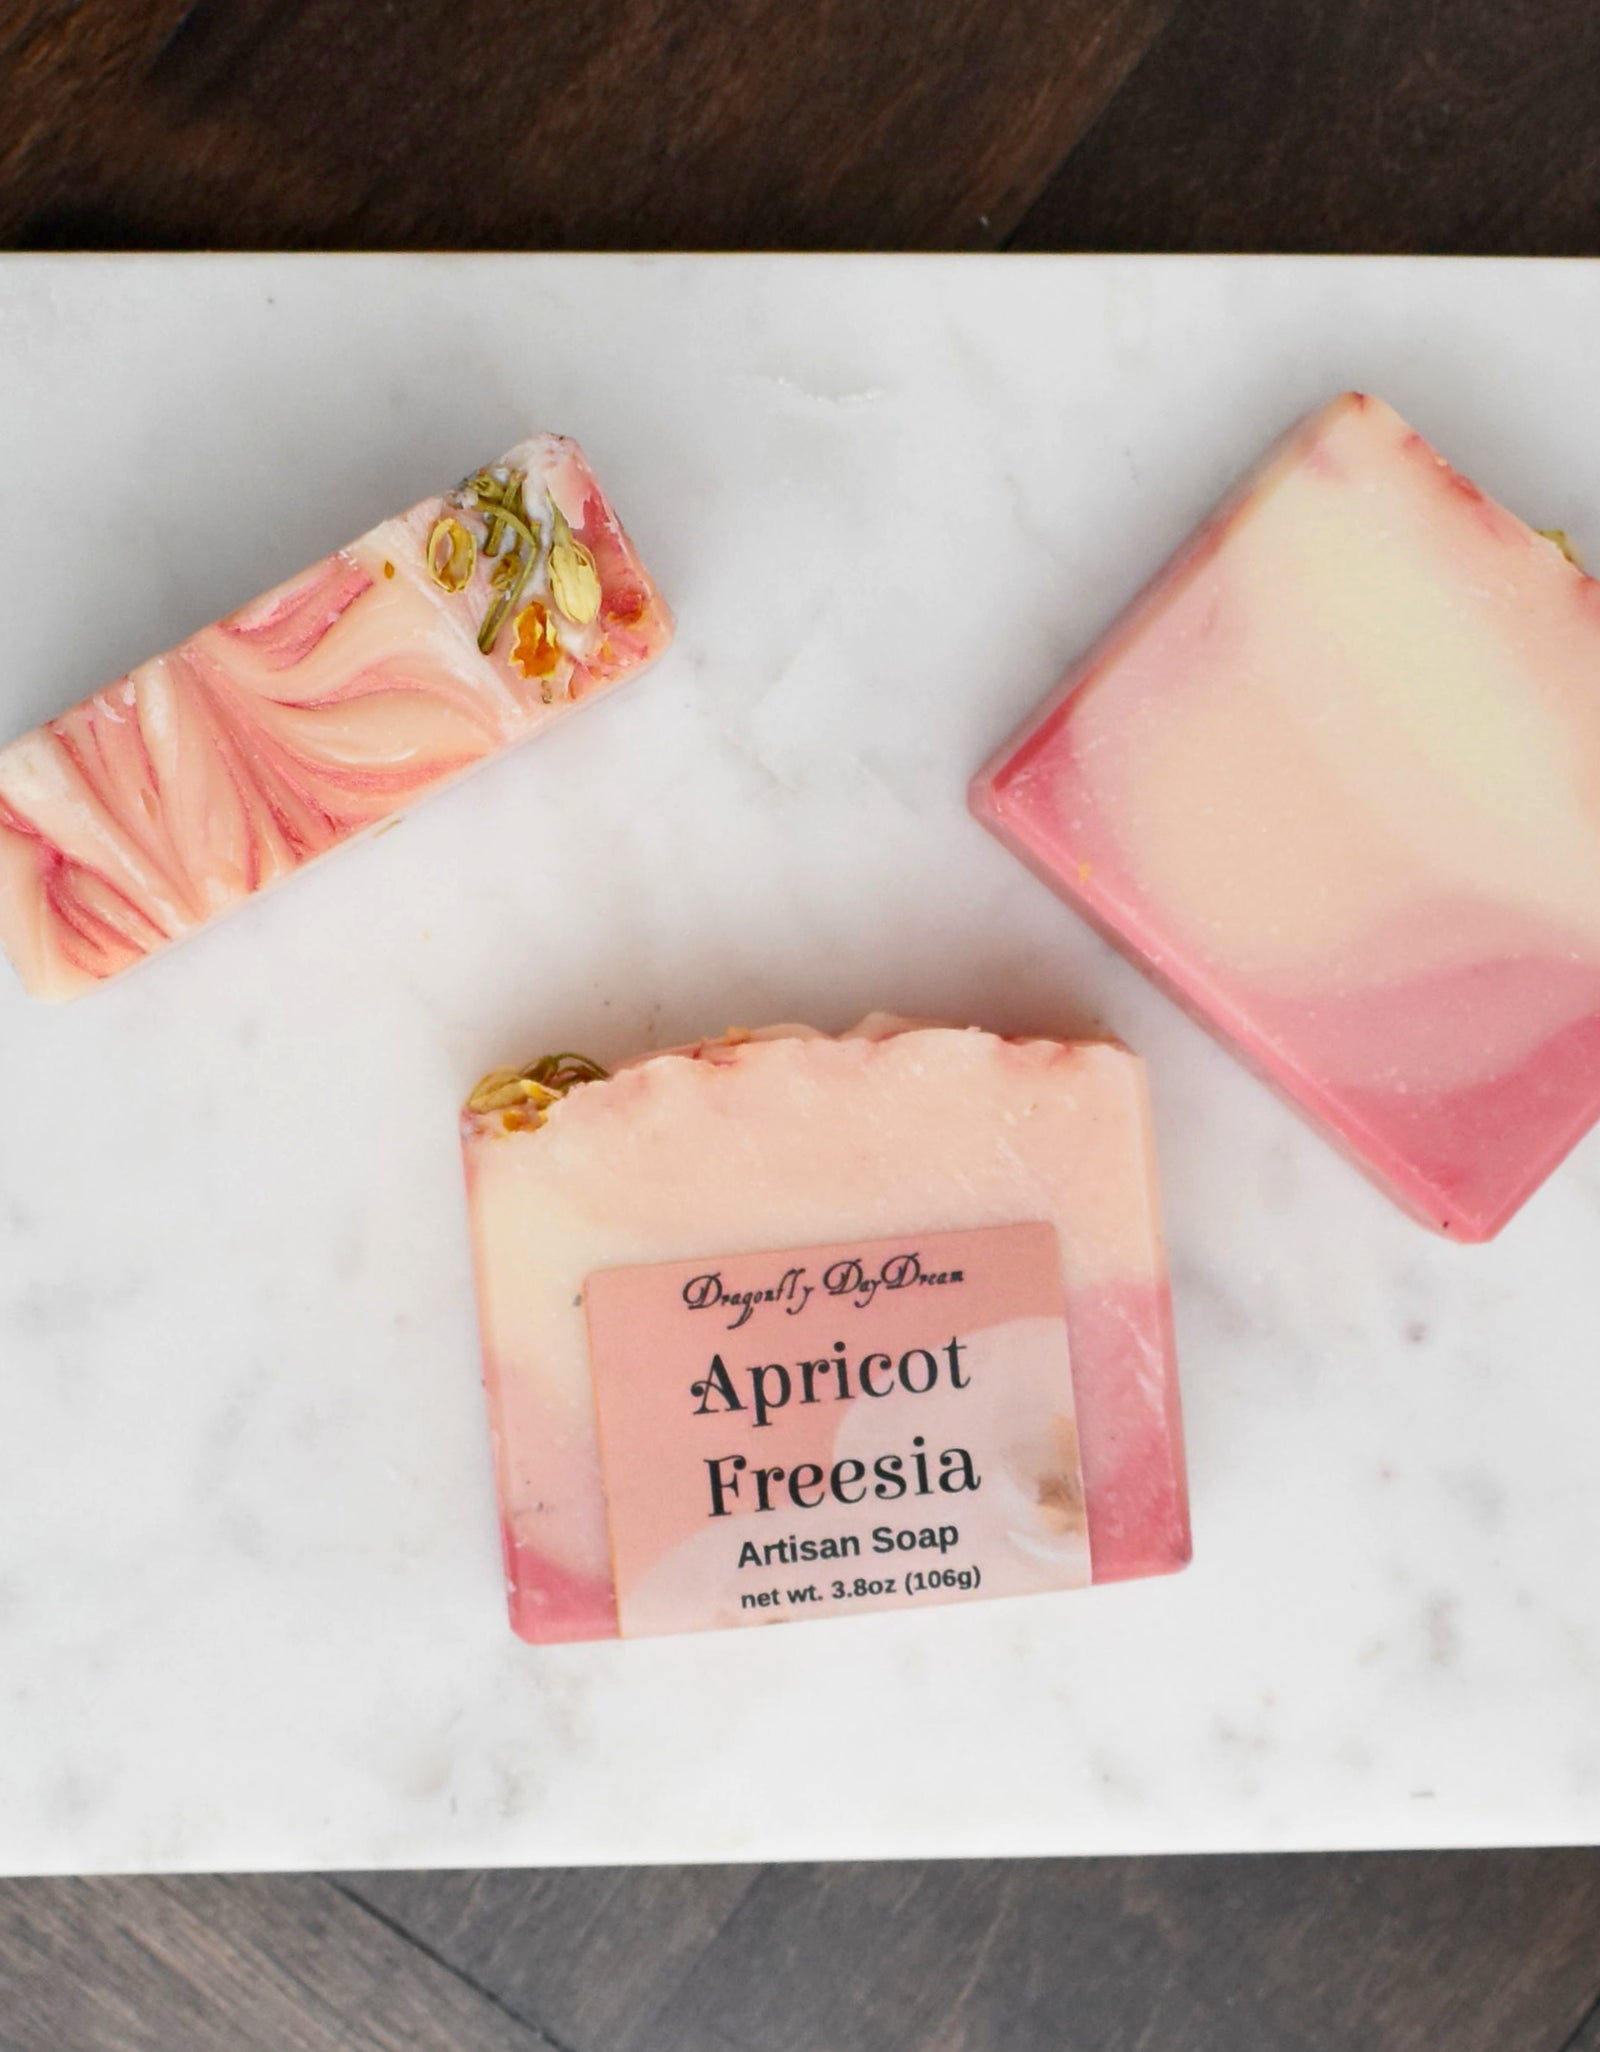 Apricot Freesia Artisan Soap